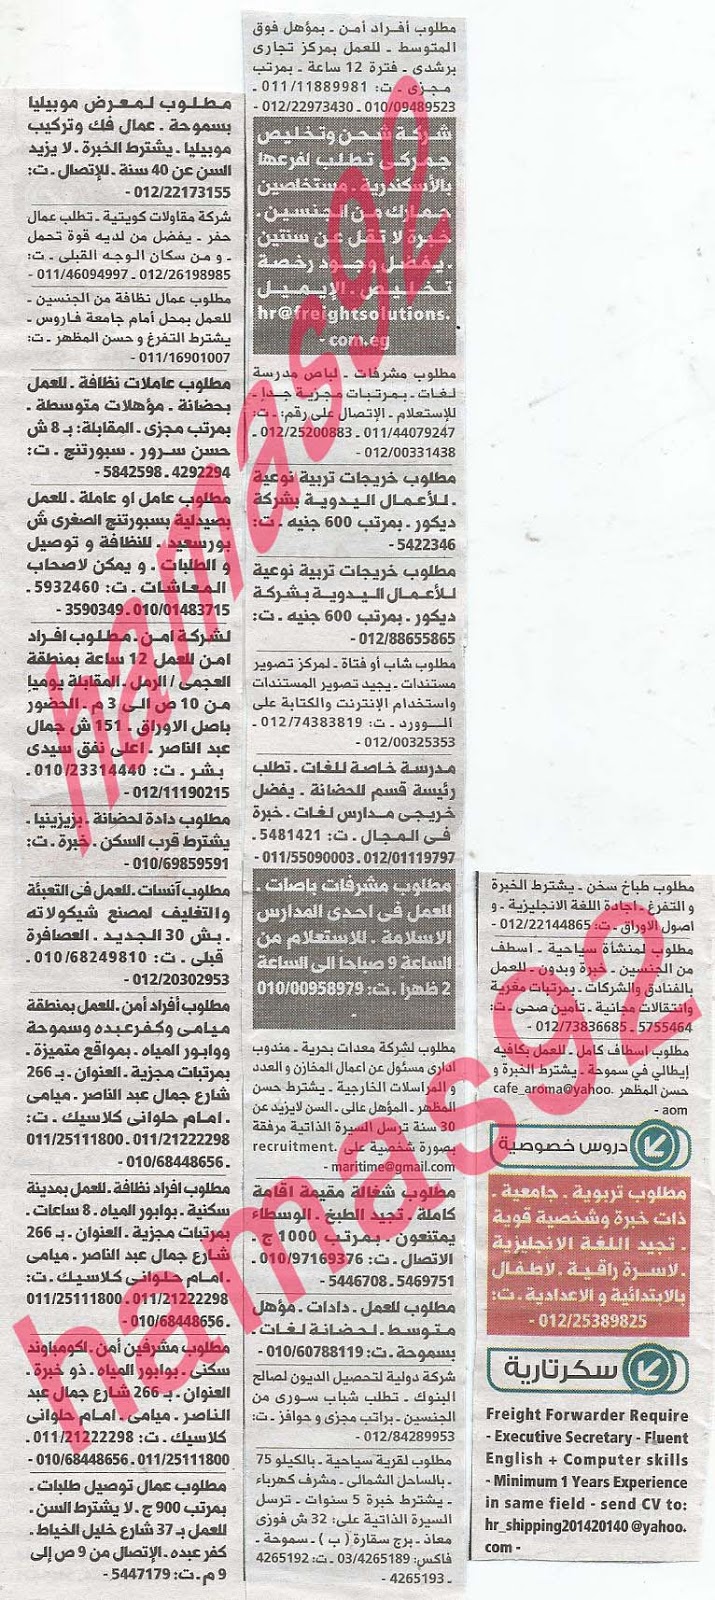 وظائف خالية فى جريدة الوسيط الاسكندرية الاثنين 26-08-2013 %D9%88+%D8%B3+%D8%B3+15